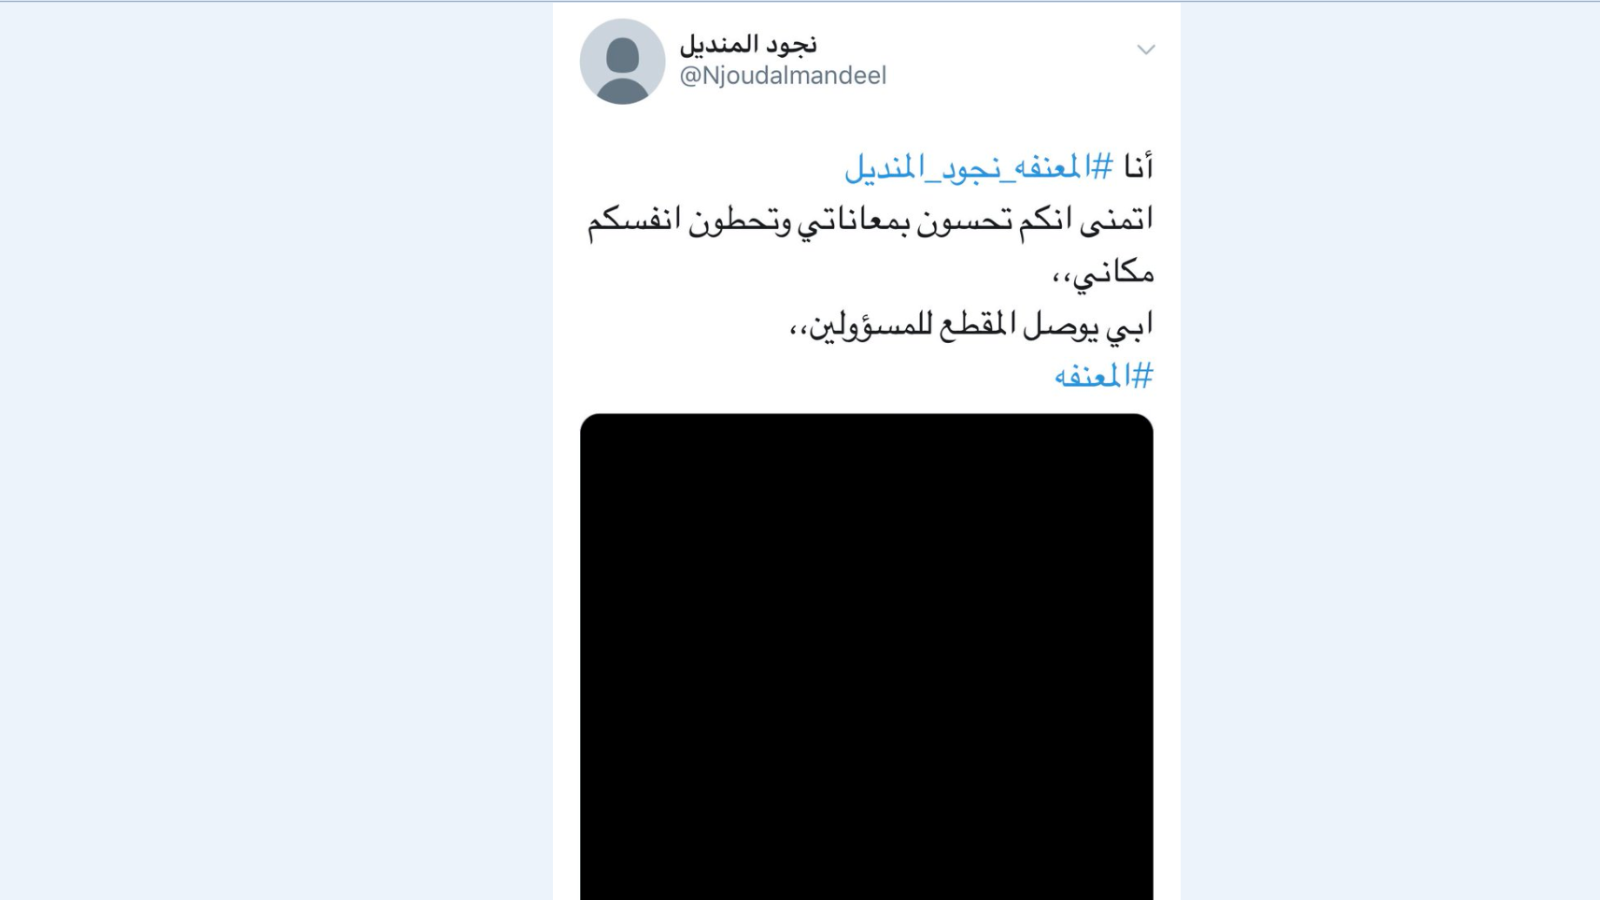 شابة سعودية تدعى نجود المنديل نشرت فيديو قالت فيه إنها تعرضت للتعنيف من والدها لكن الفيديو اختفى من حسابها لاحقا(مواقع التواصل)